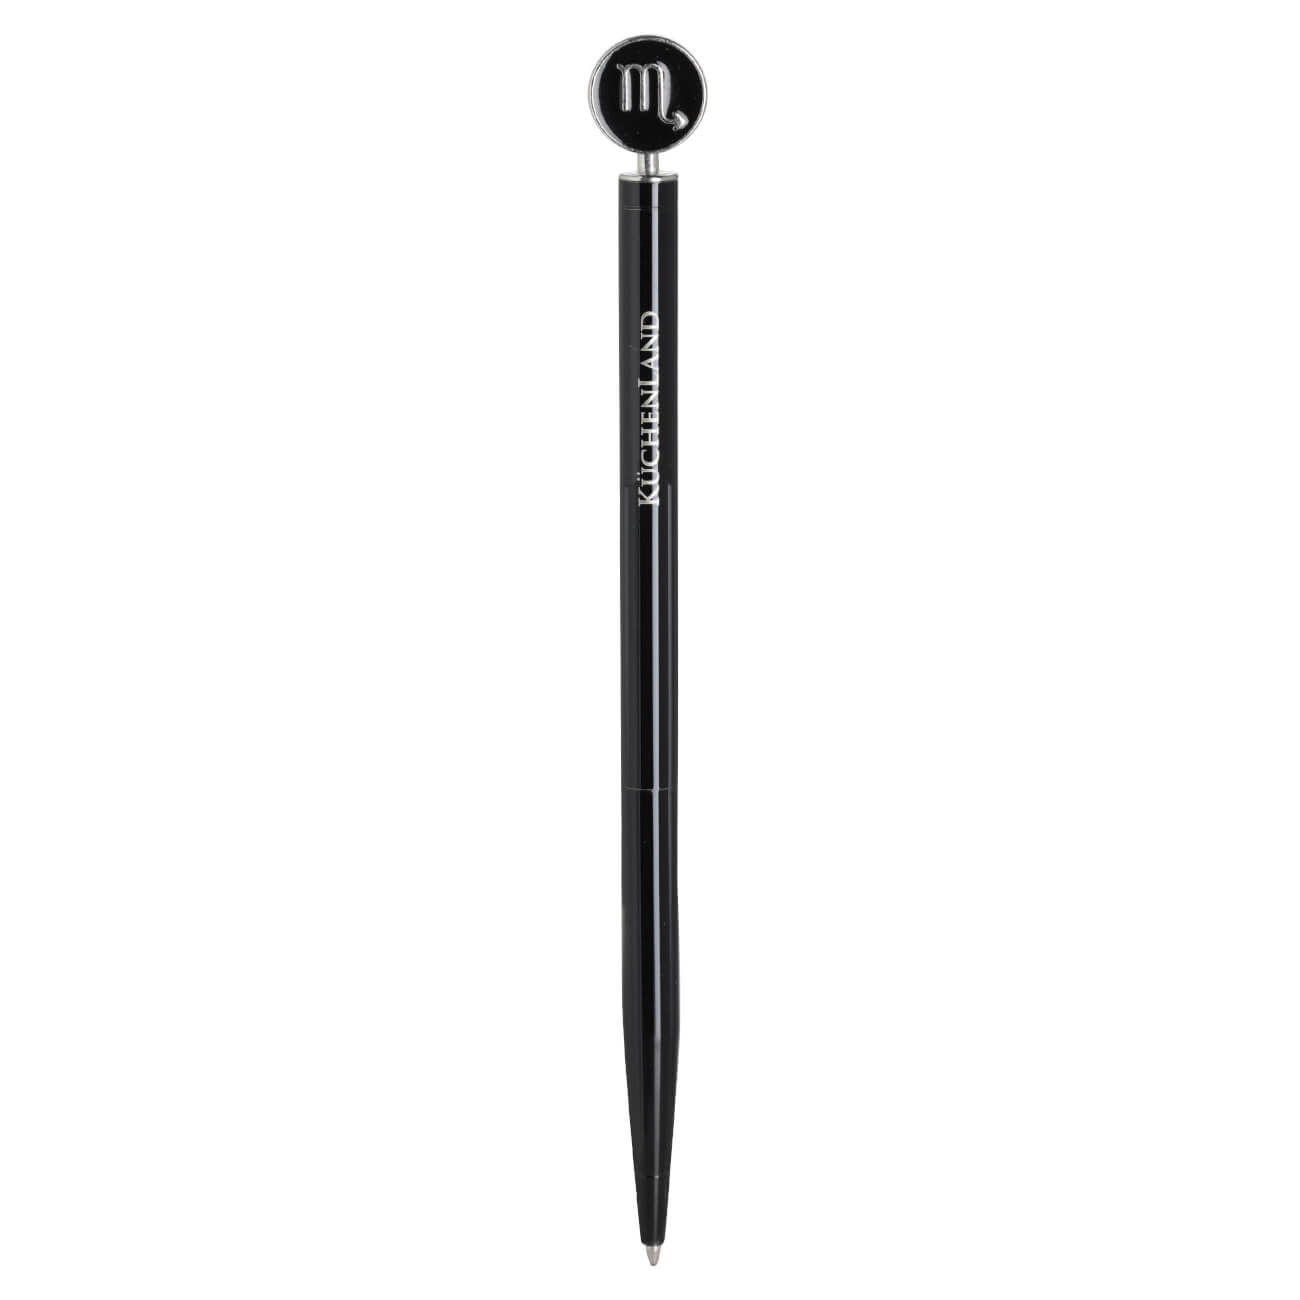 Ручка шариковая, 15 см, с фигуркой, сталь, черно-серебристая, Скорпион, Zodiac ручка подарочная шариковая в пластиковом футляре поворотная